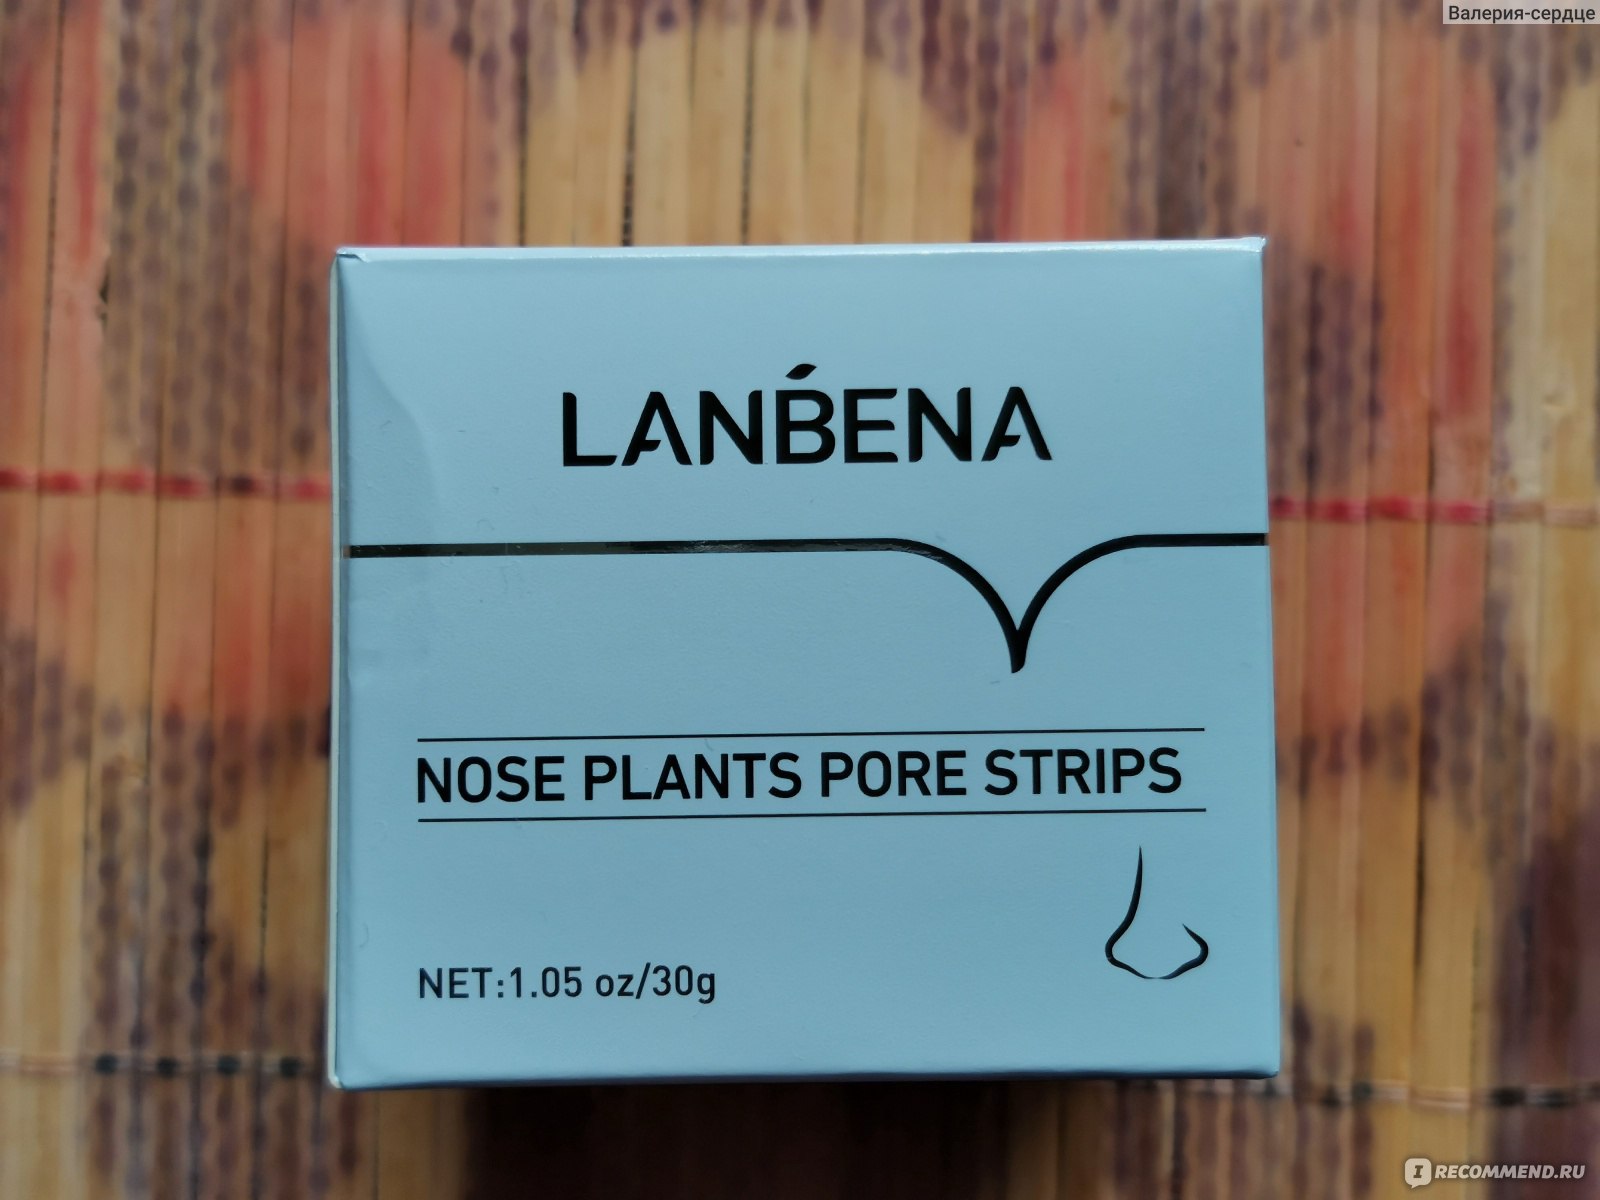 Lanbena plants pore strips